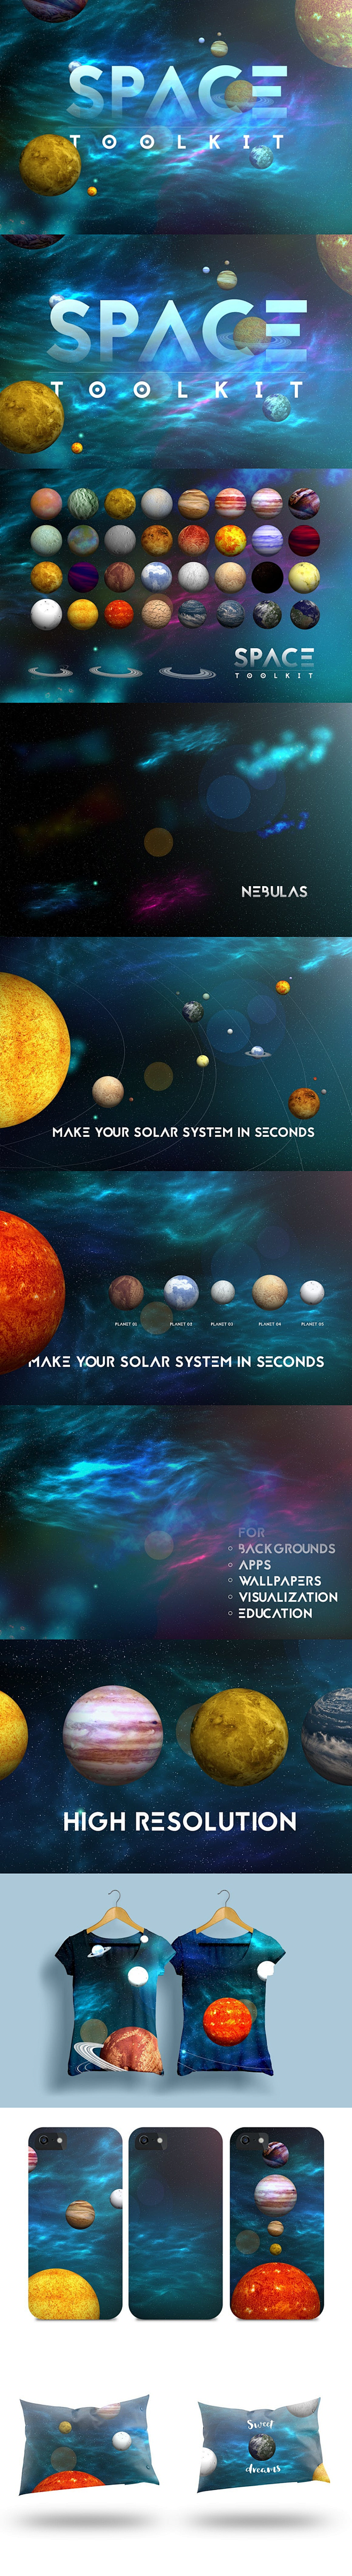 太阳系行星 设计素材 太阳系 空间图 宇...